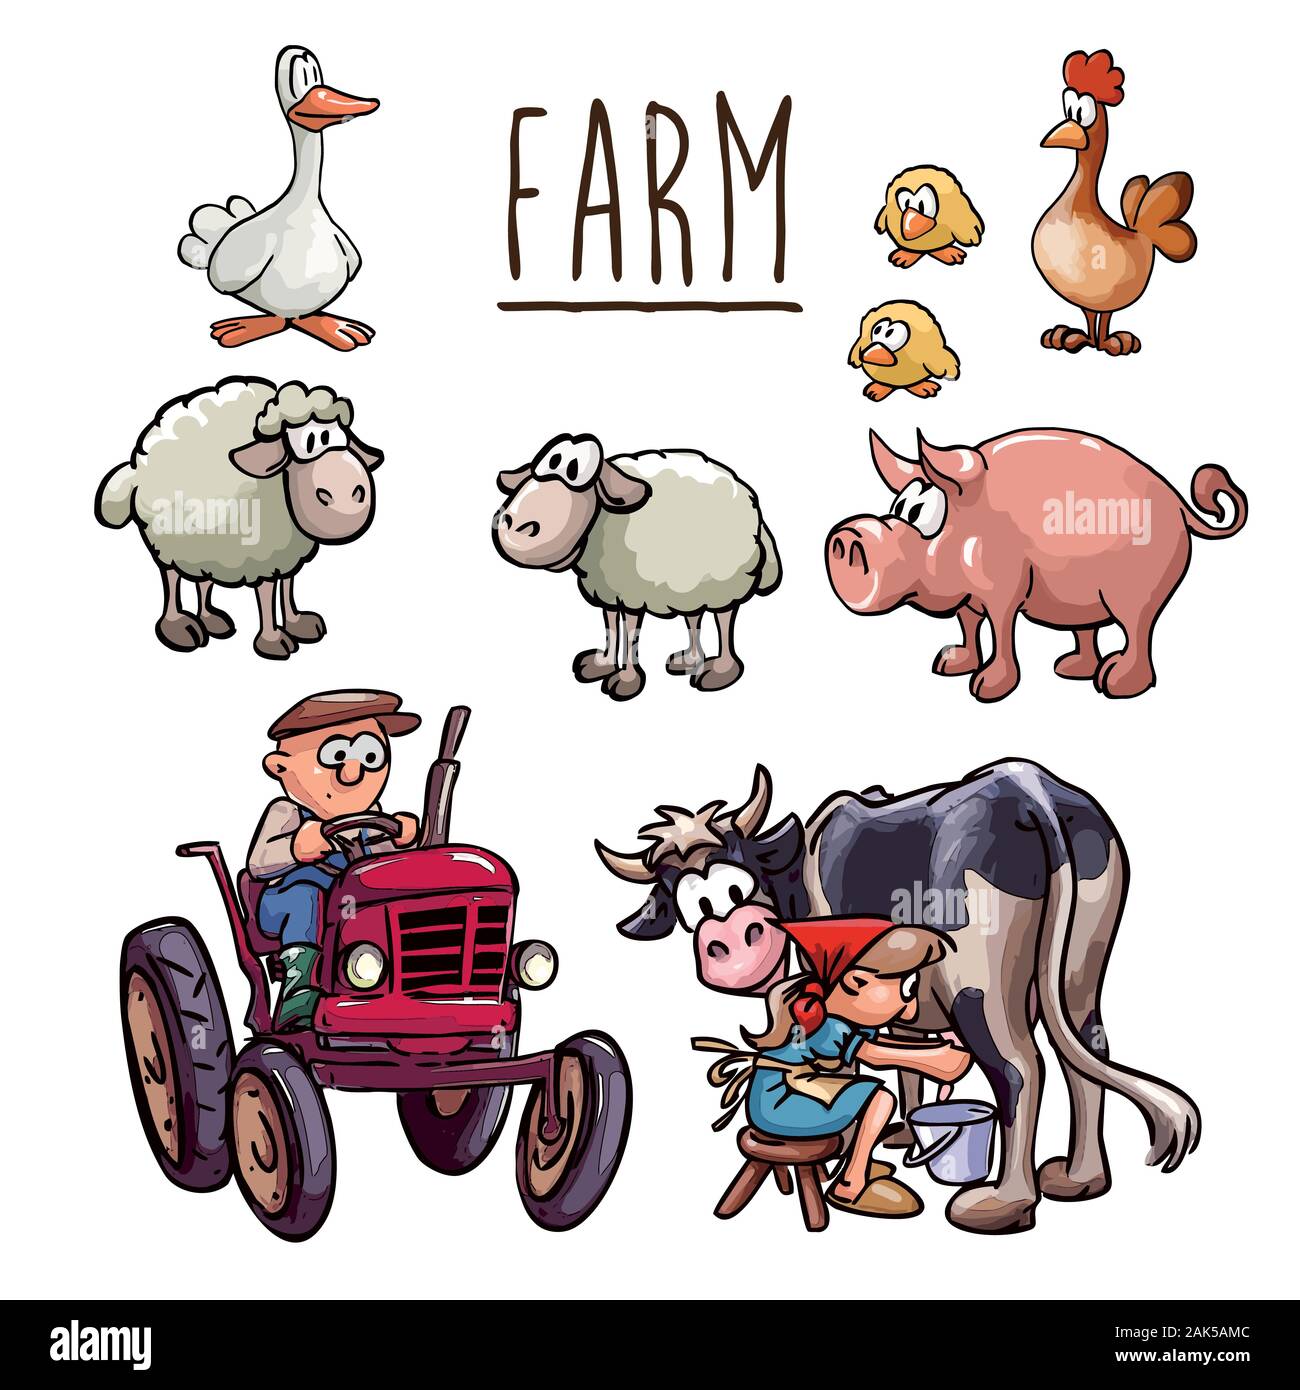 Cartoon Illustration - Landwirt beim Fahren eines Traktors, eine Bäuerin melkende Kuh und Satz von Nutztieren (Huhn, Hühner, Schafe, Gänse und Schweine) - isoliert Stock Vektor